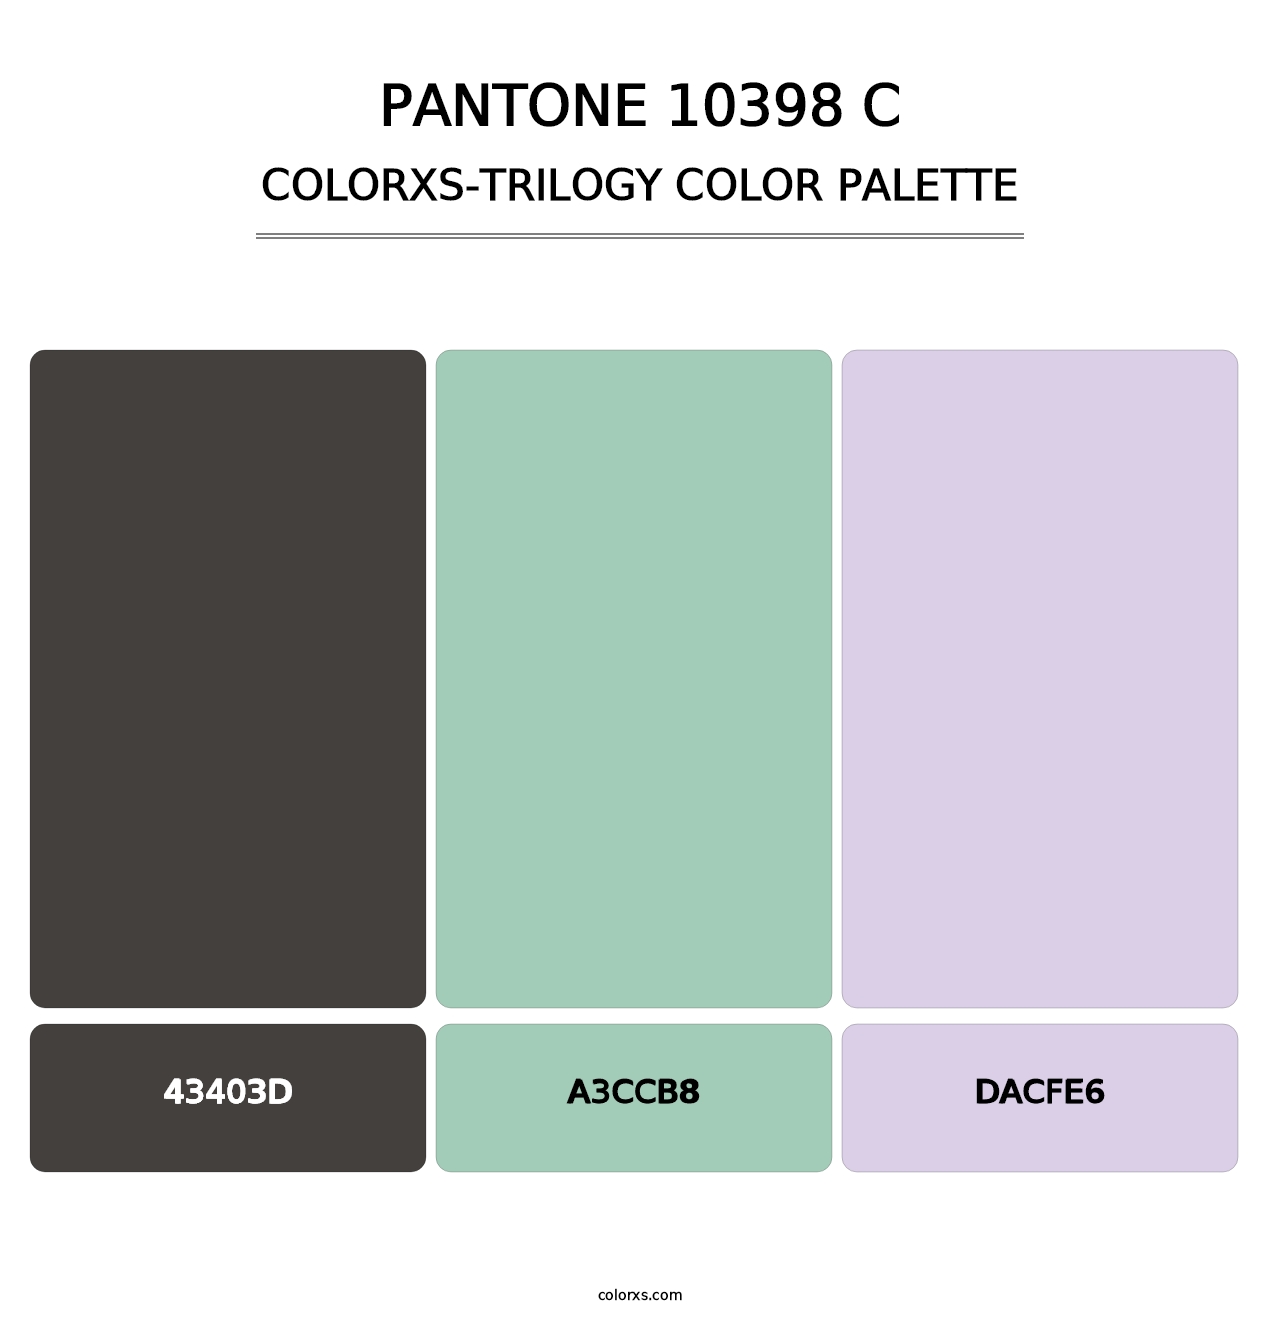 PANTONE 10398 C - Colorxs Trilogy Palette